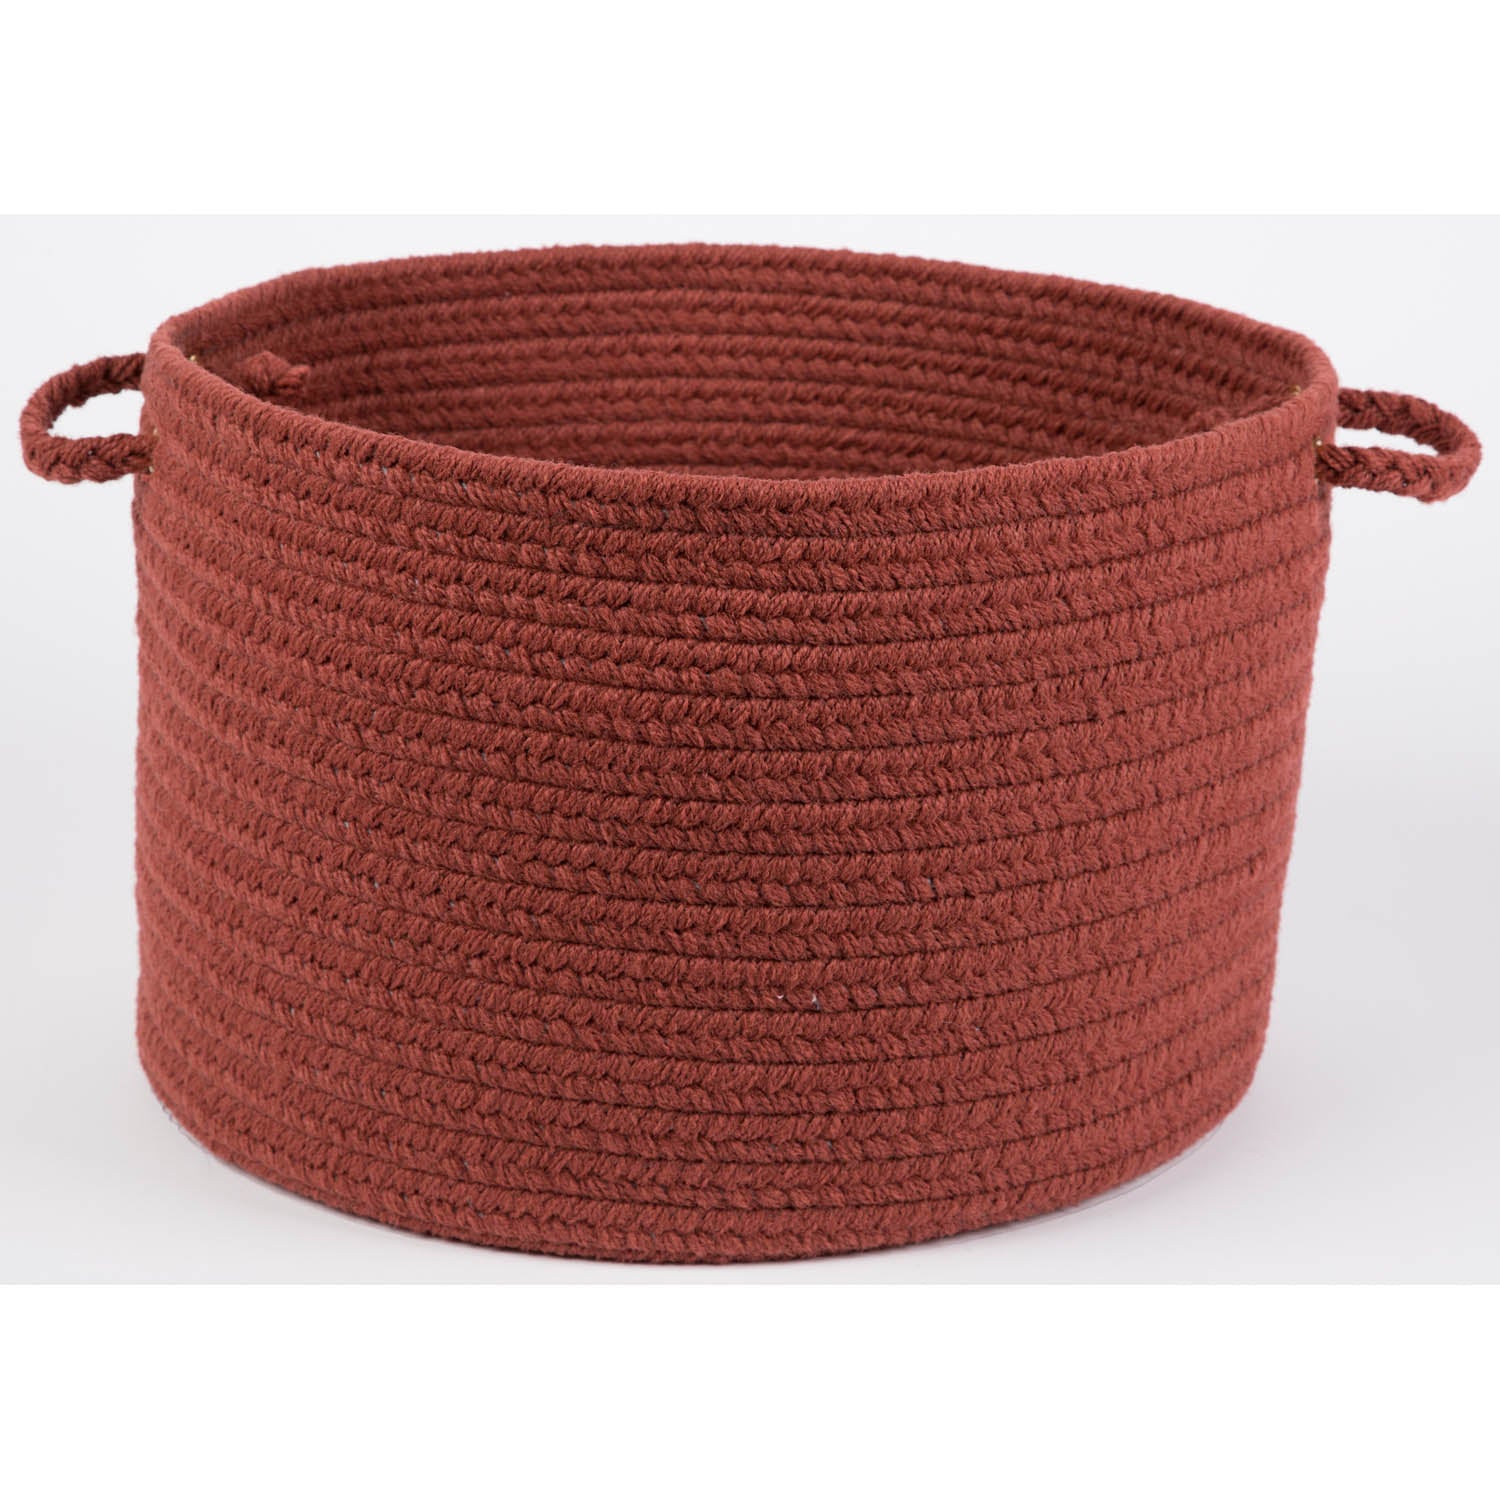 Confetti Rope Storage Basket #color_terra cotta